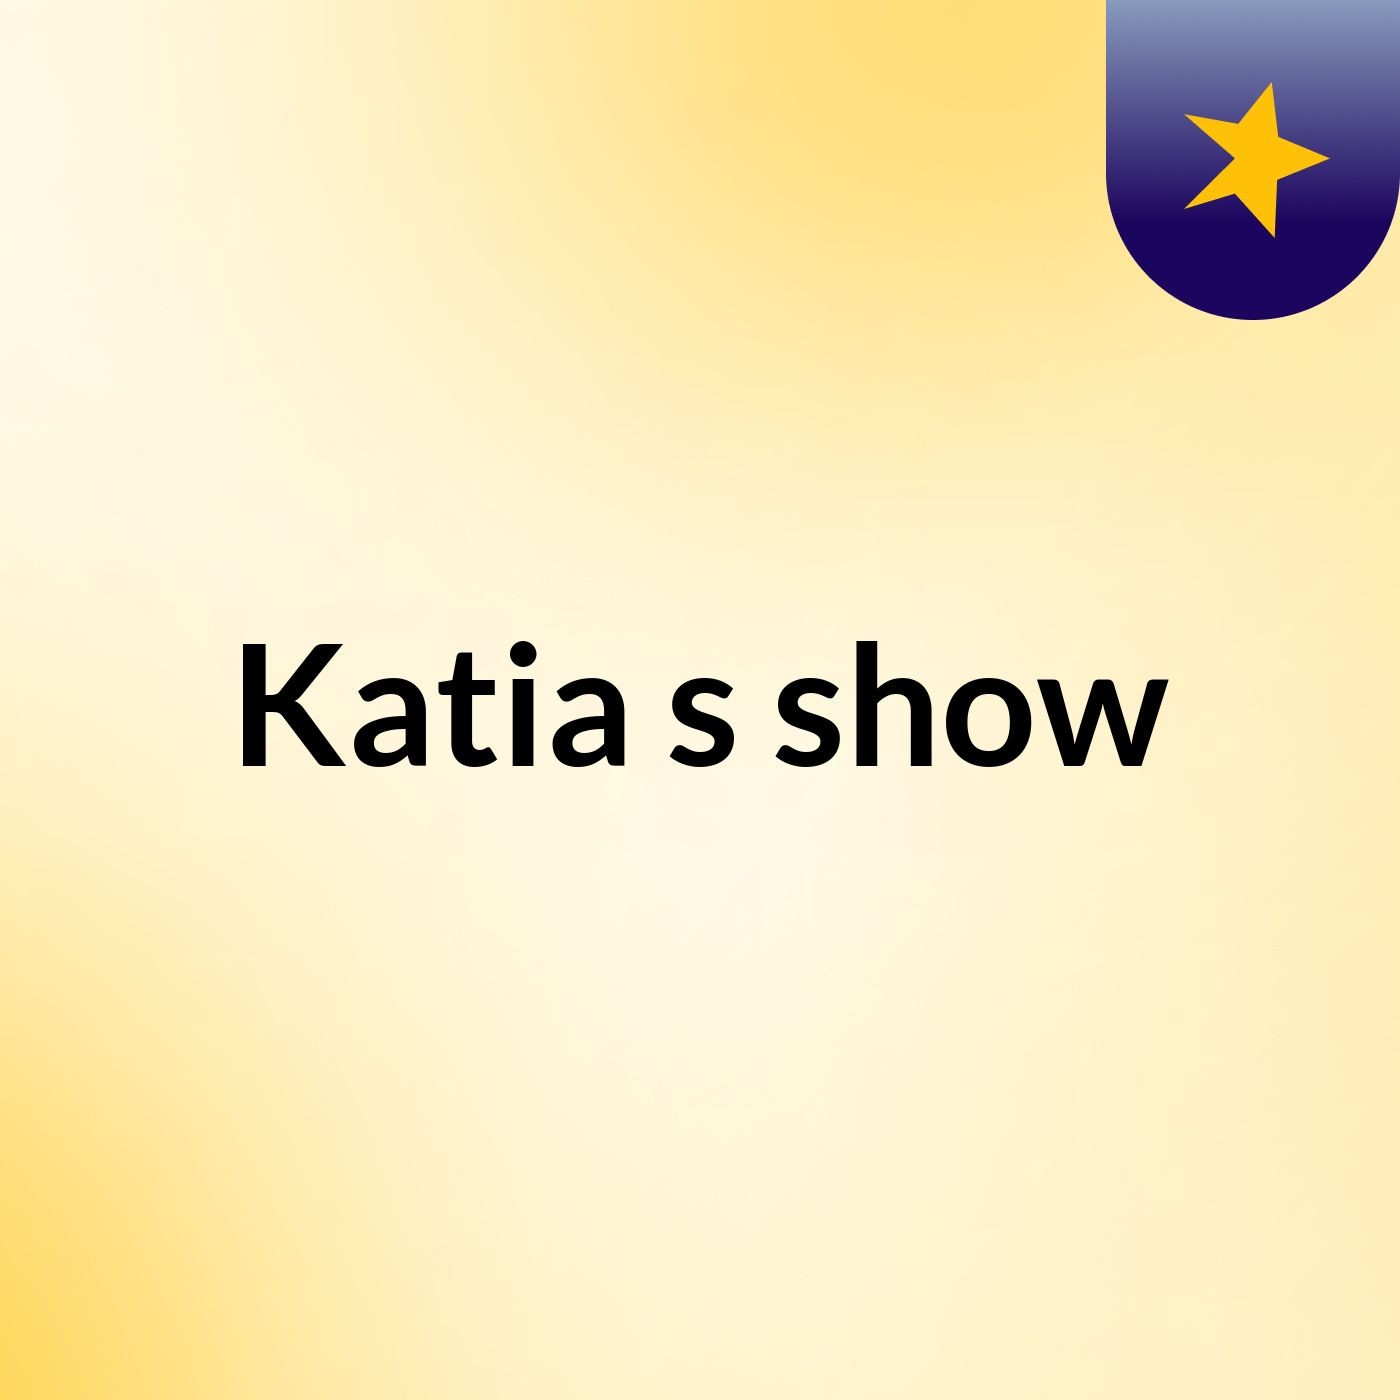 Katia's show